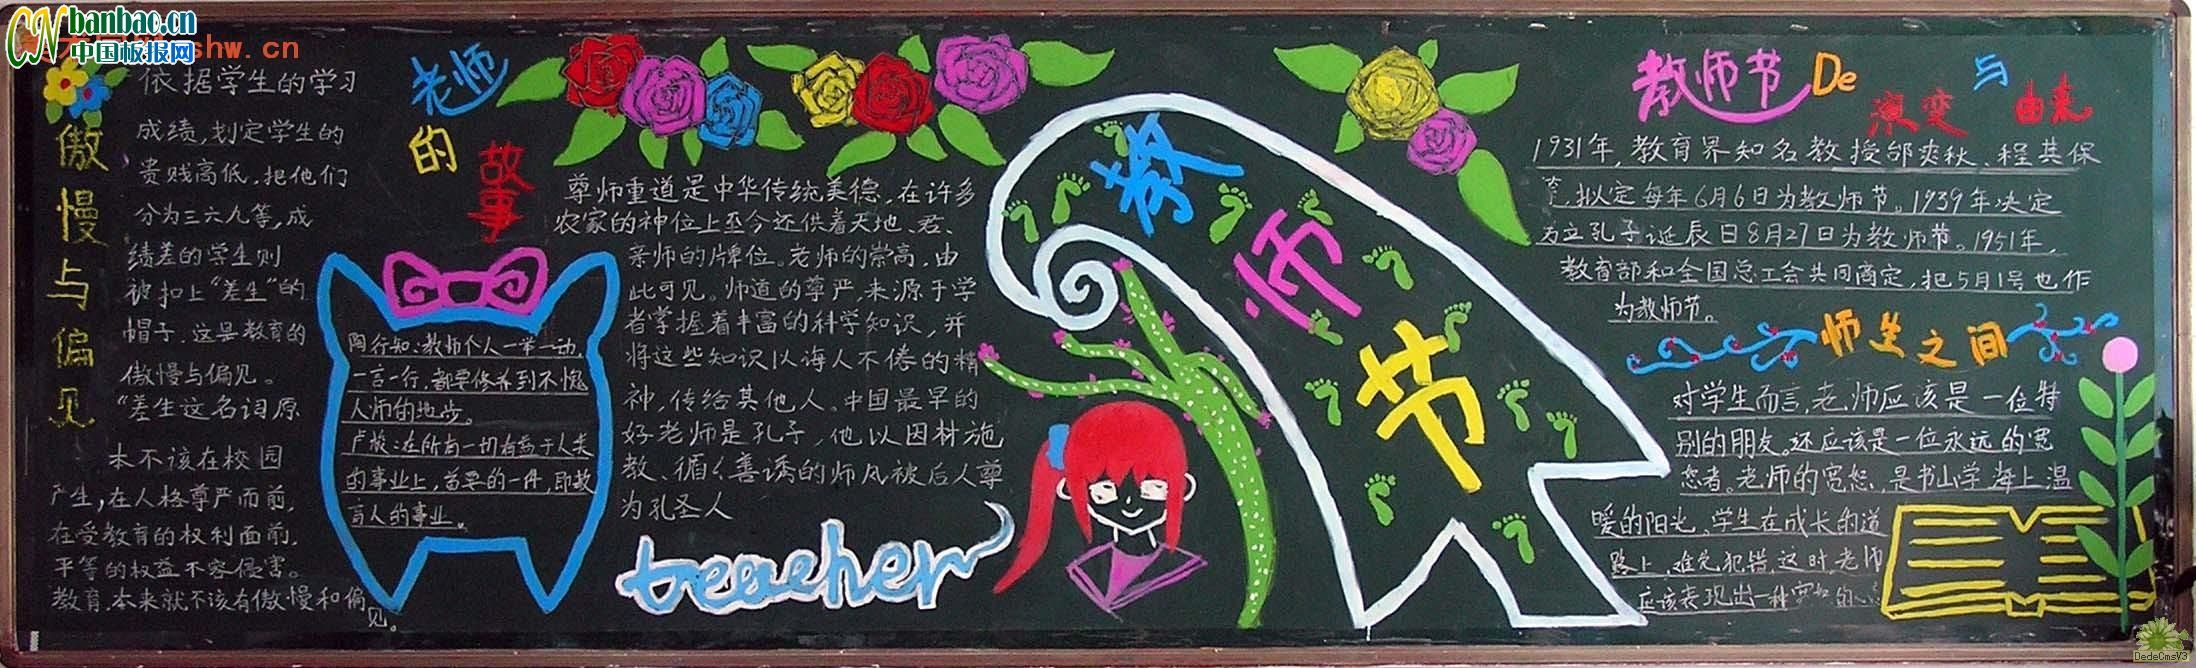 庆祝2009年教师节黑板板设计